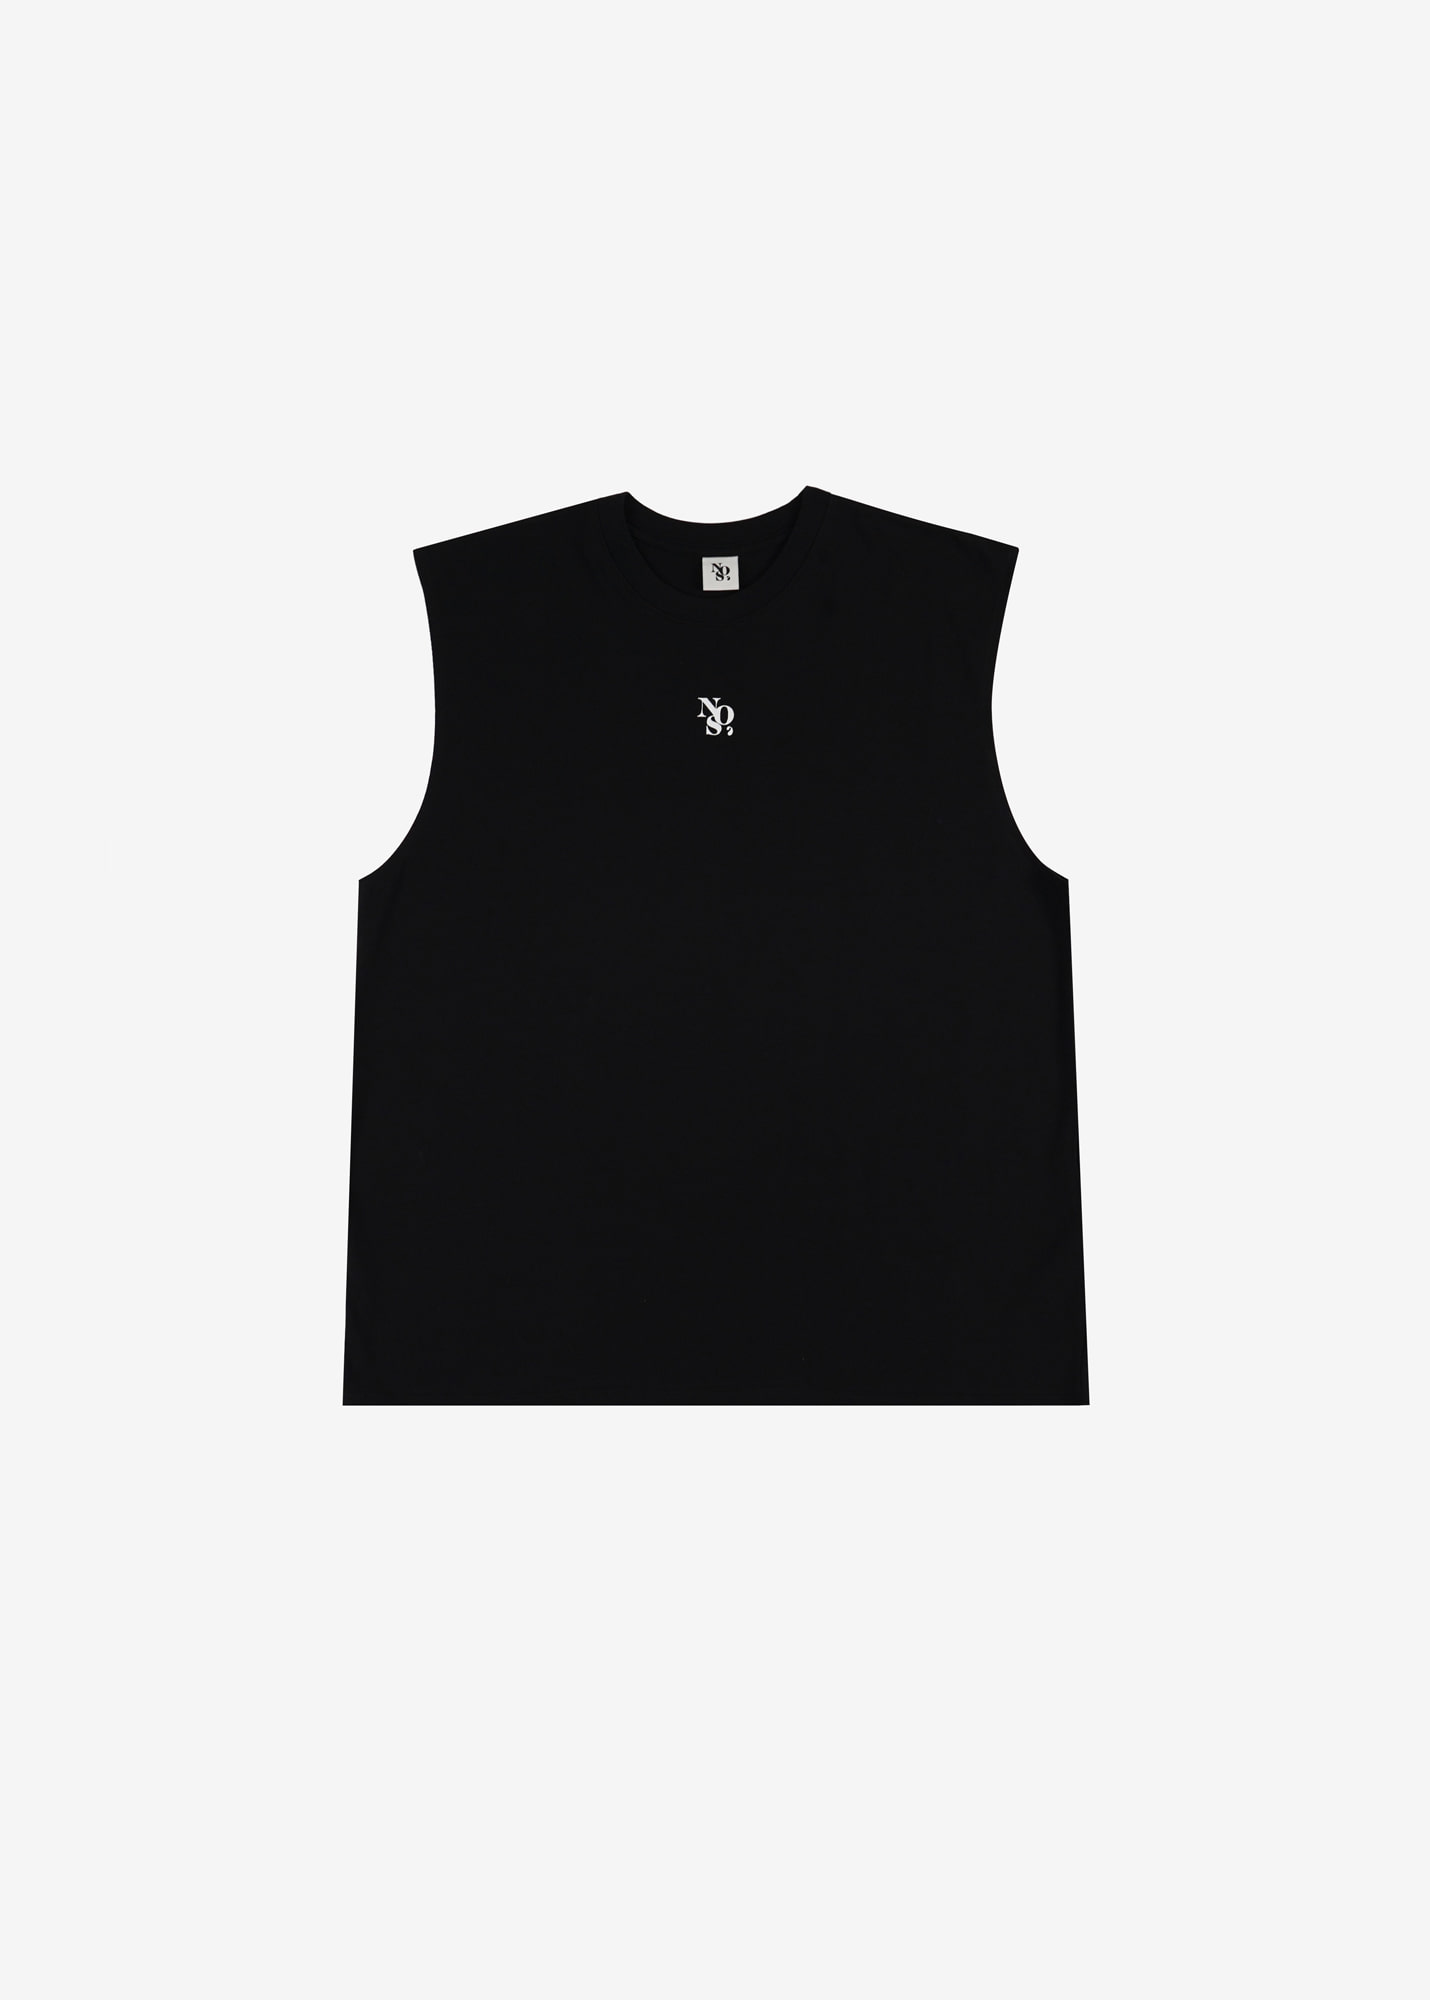 NOS7 Lettering Sleeveless T-Shirt - Black